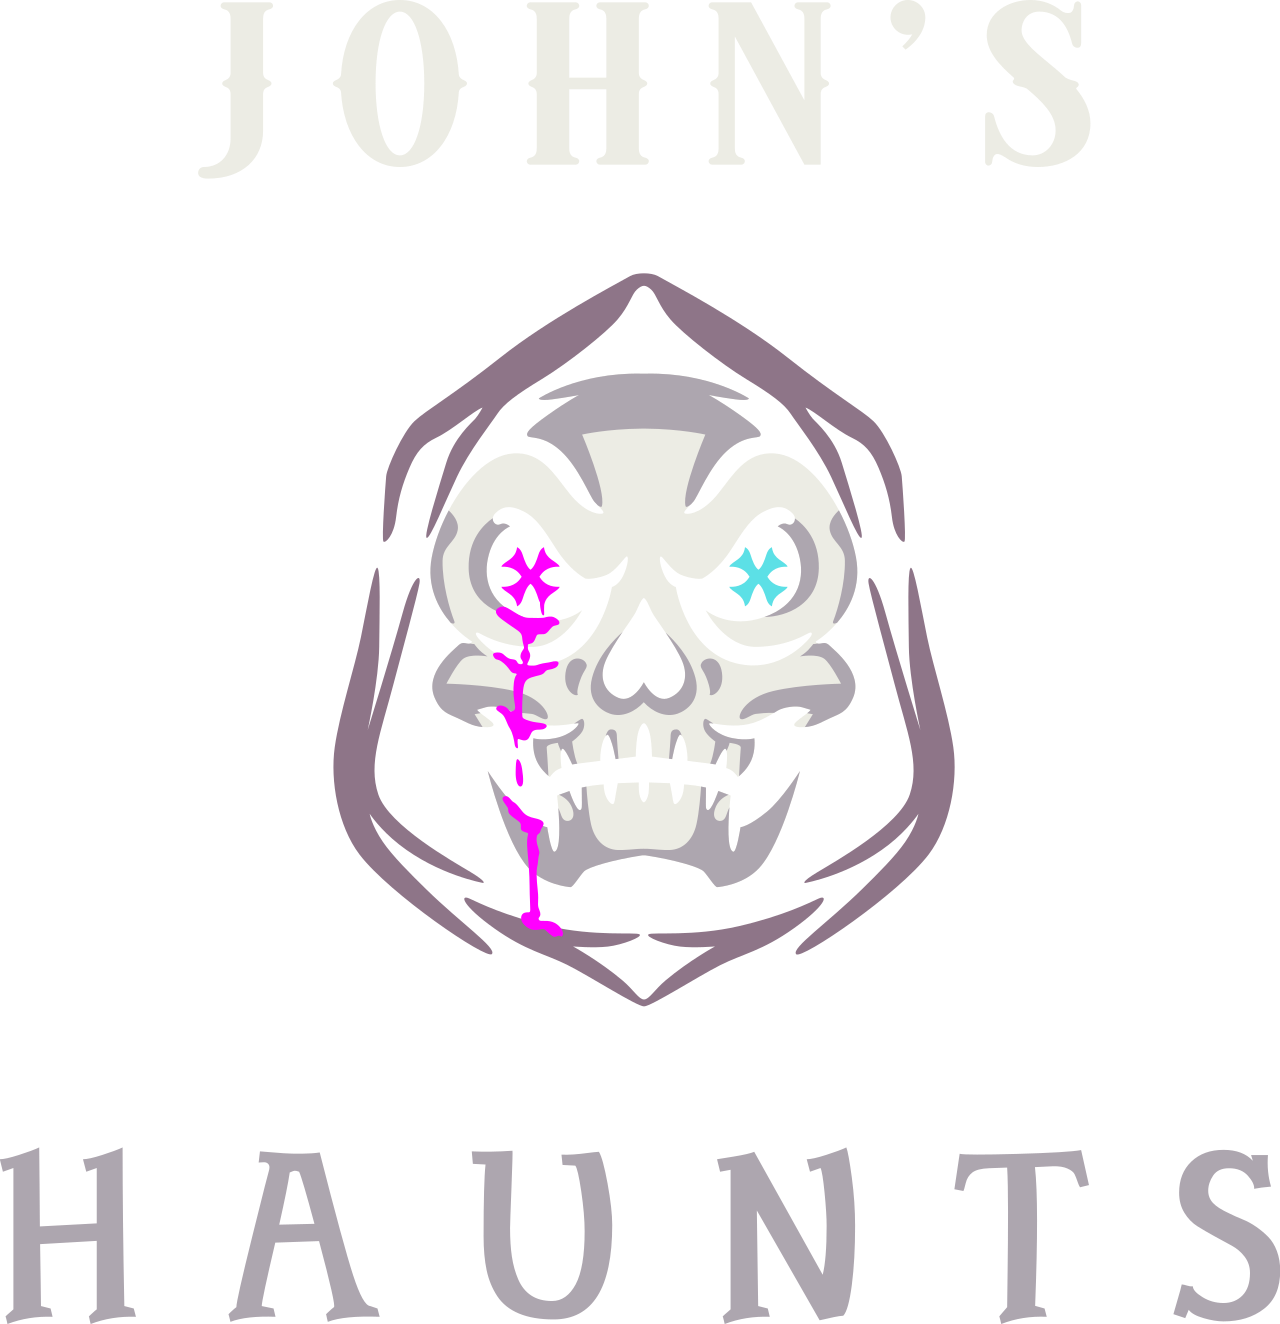 John’s's logo